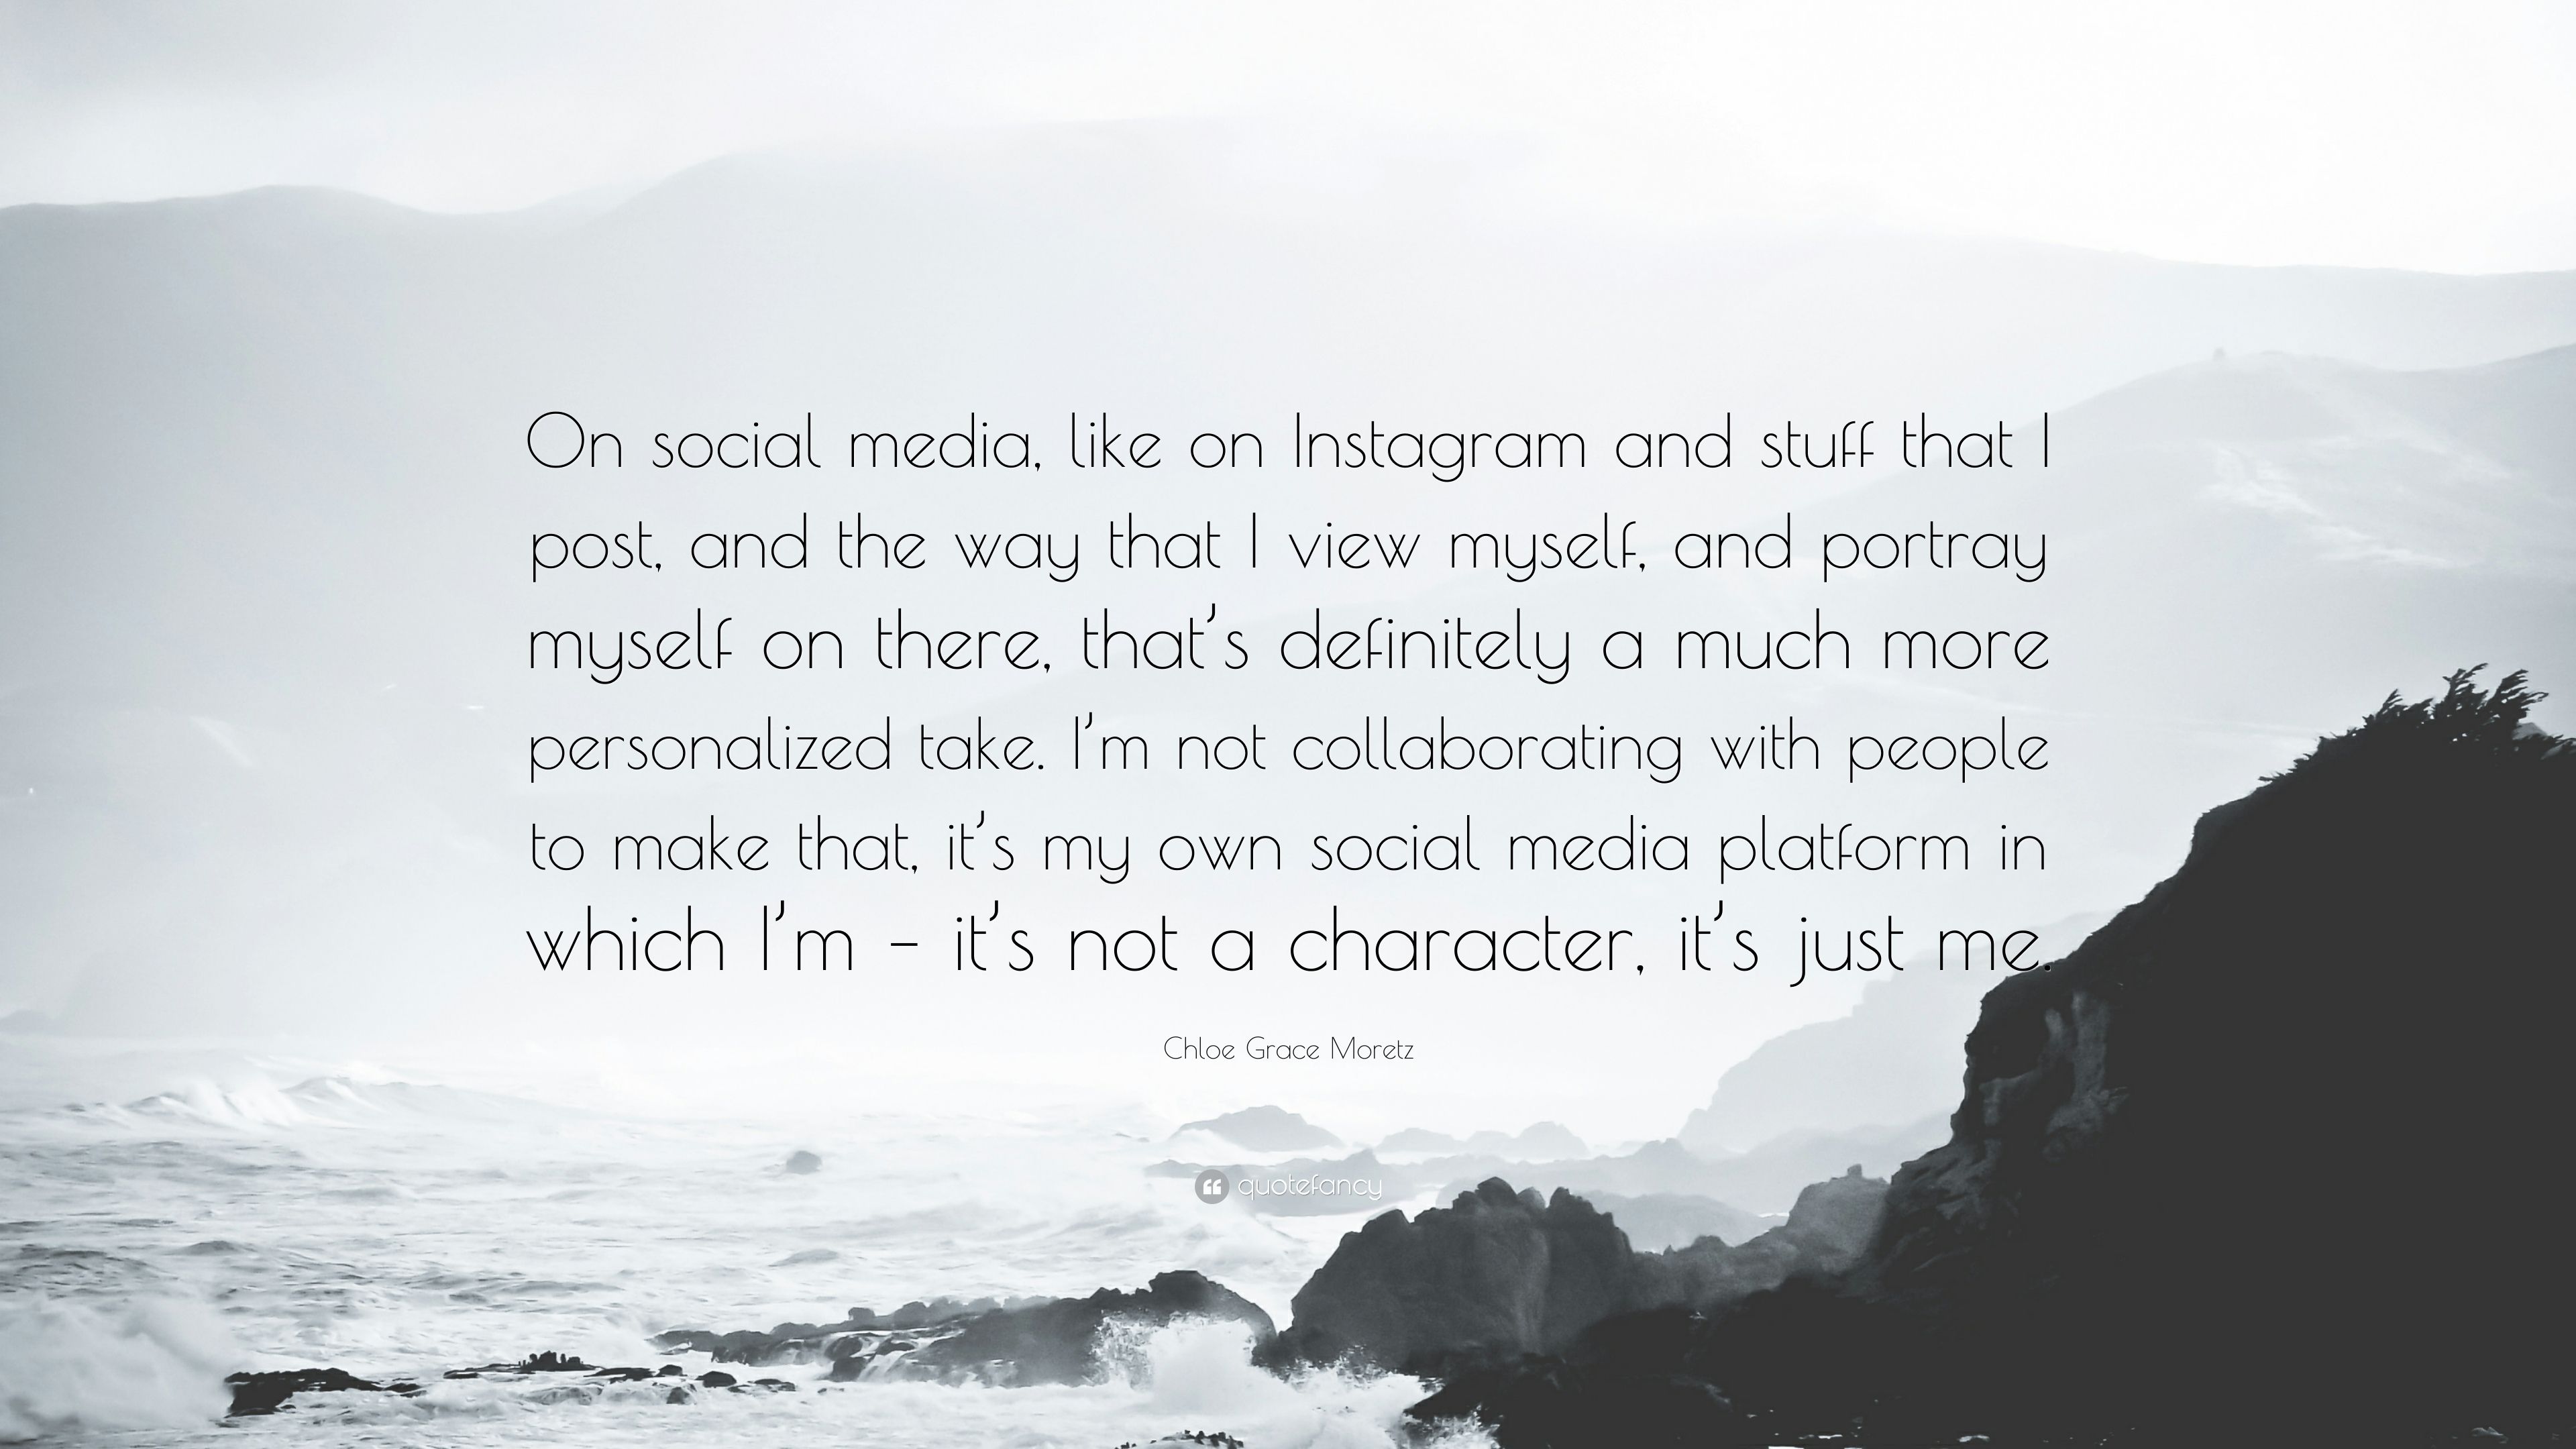 Chloe Grace Moretz Quote: “On social media, like on Instagram